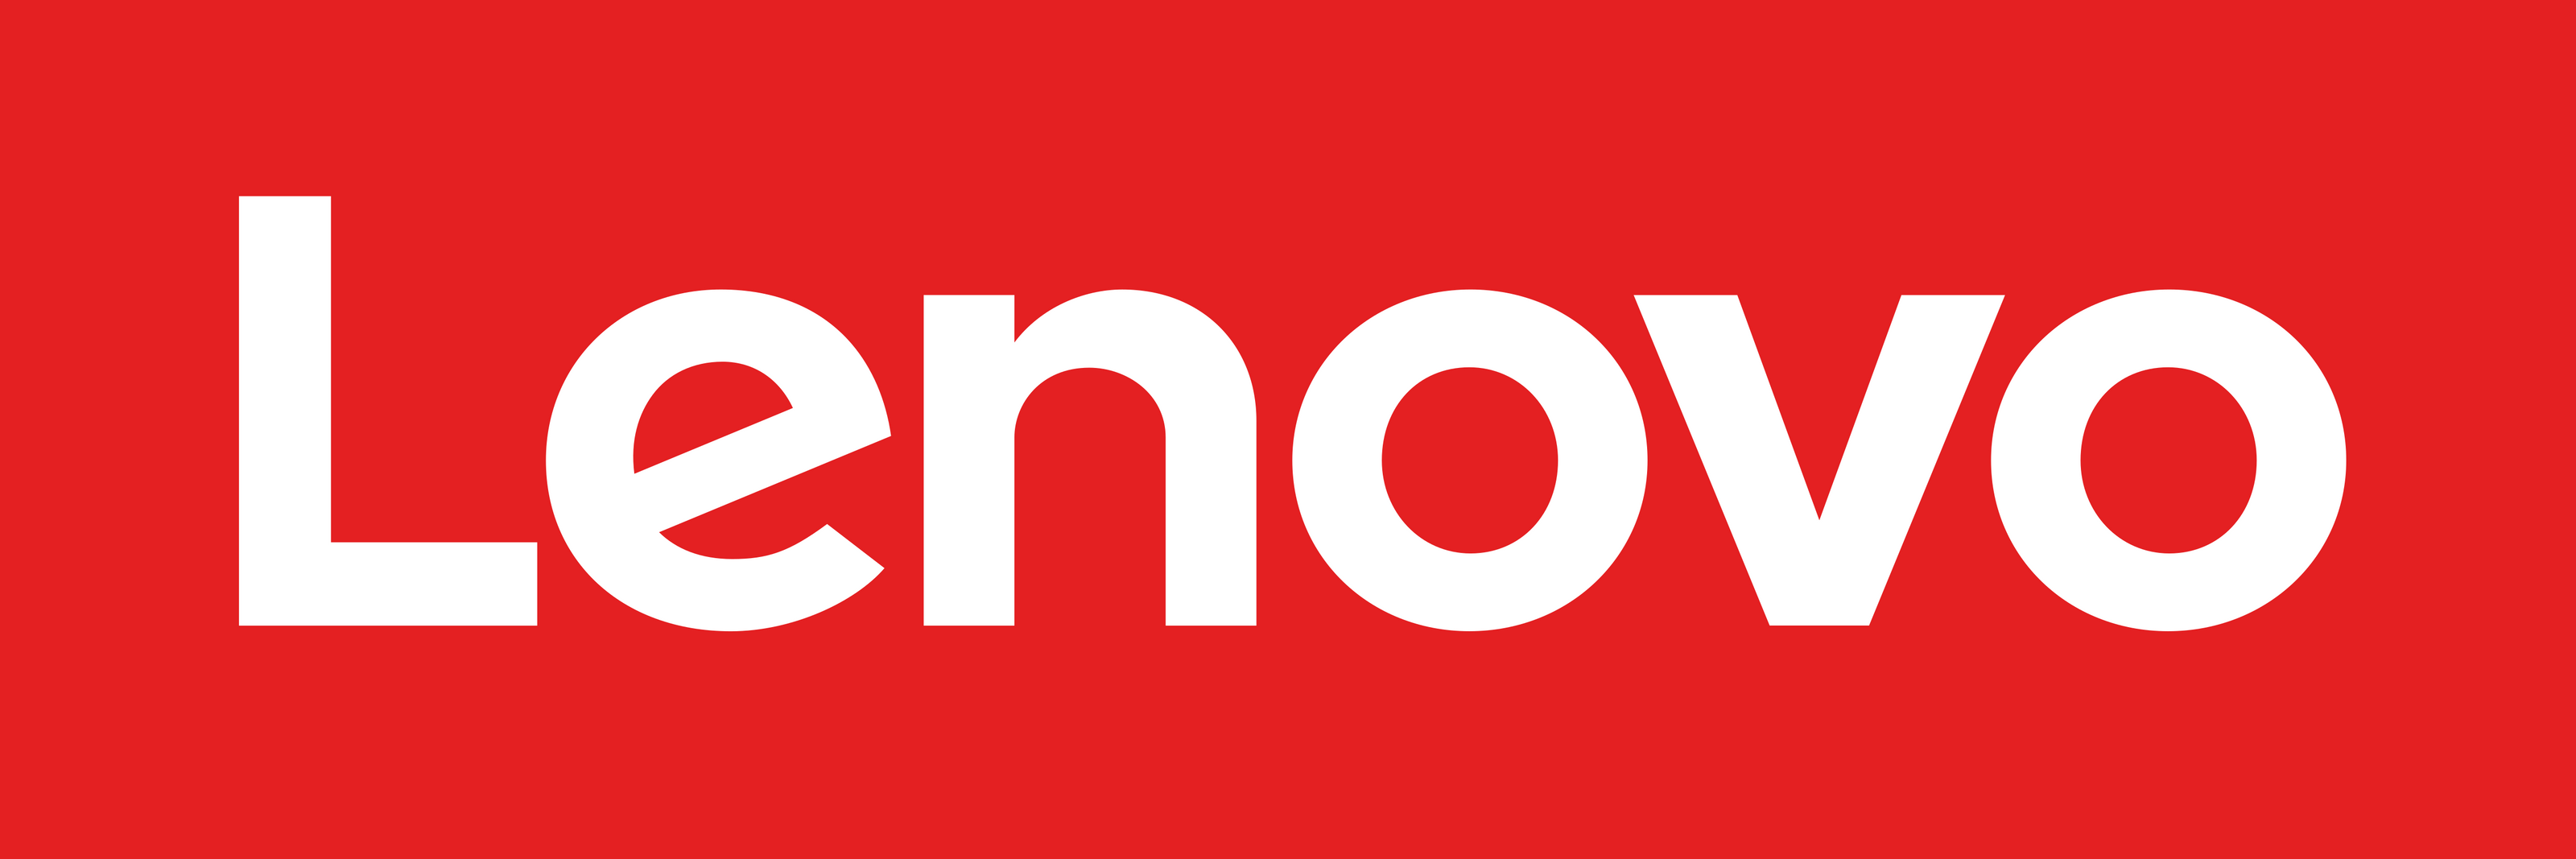 Lenovo_Logo_2015 - ADYASTORE